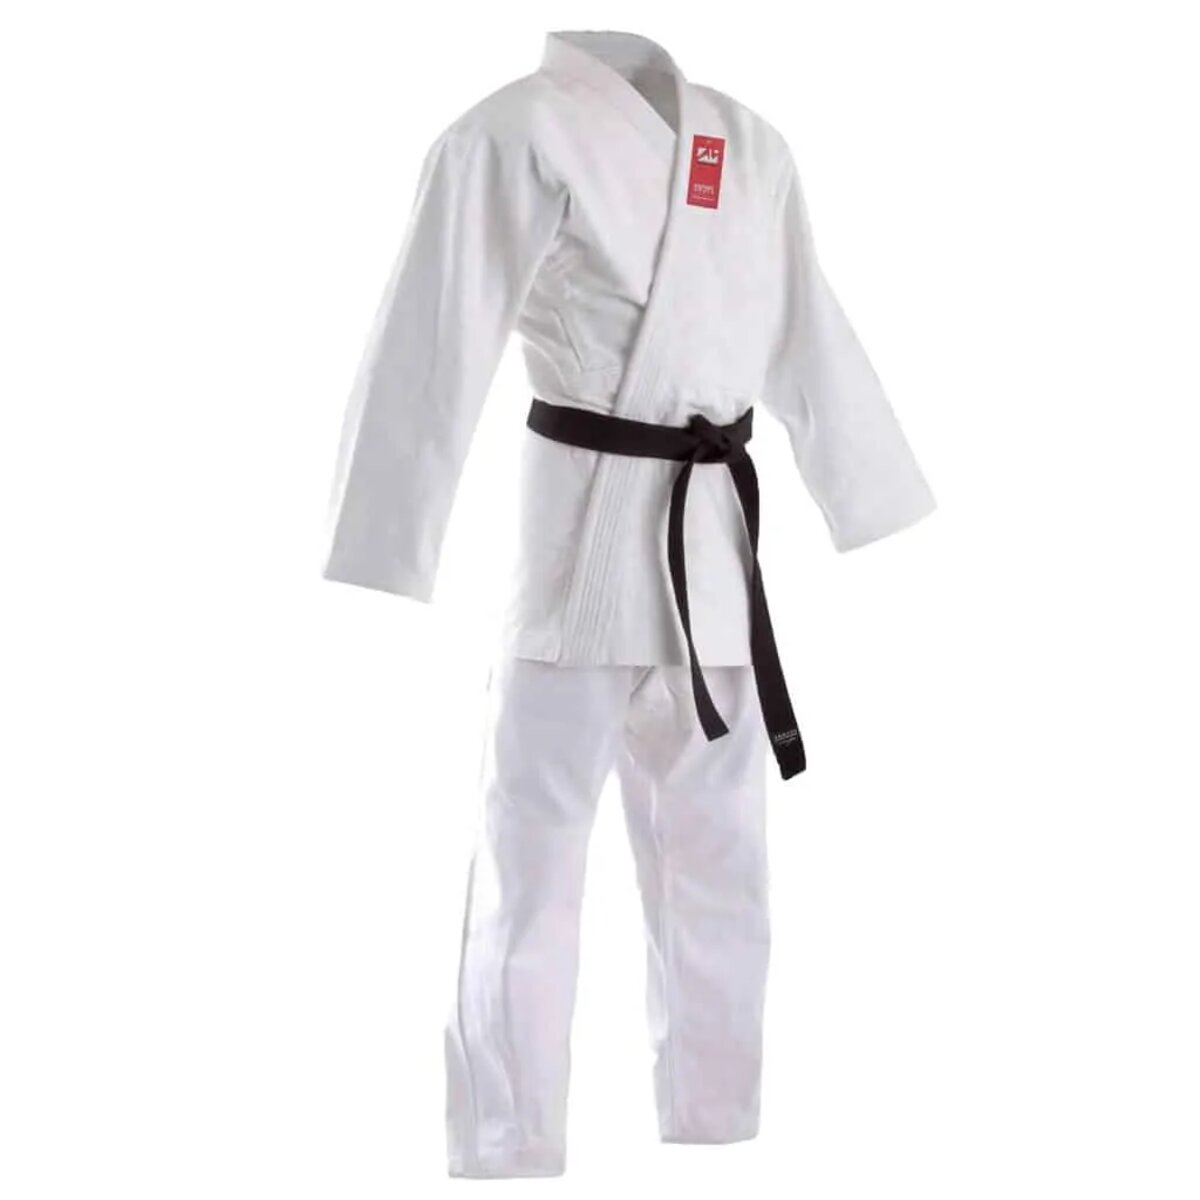 Đồng phục Judo cao cấp, chất lượng